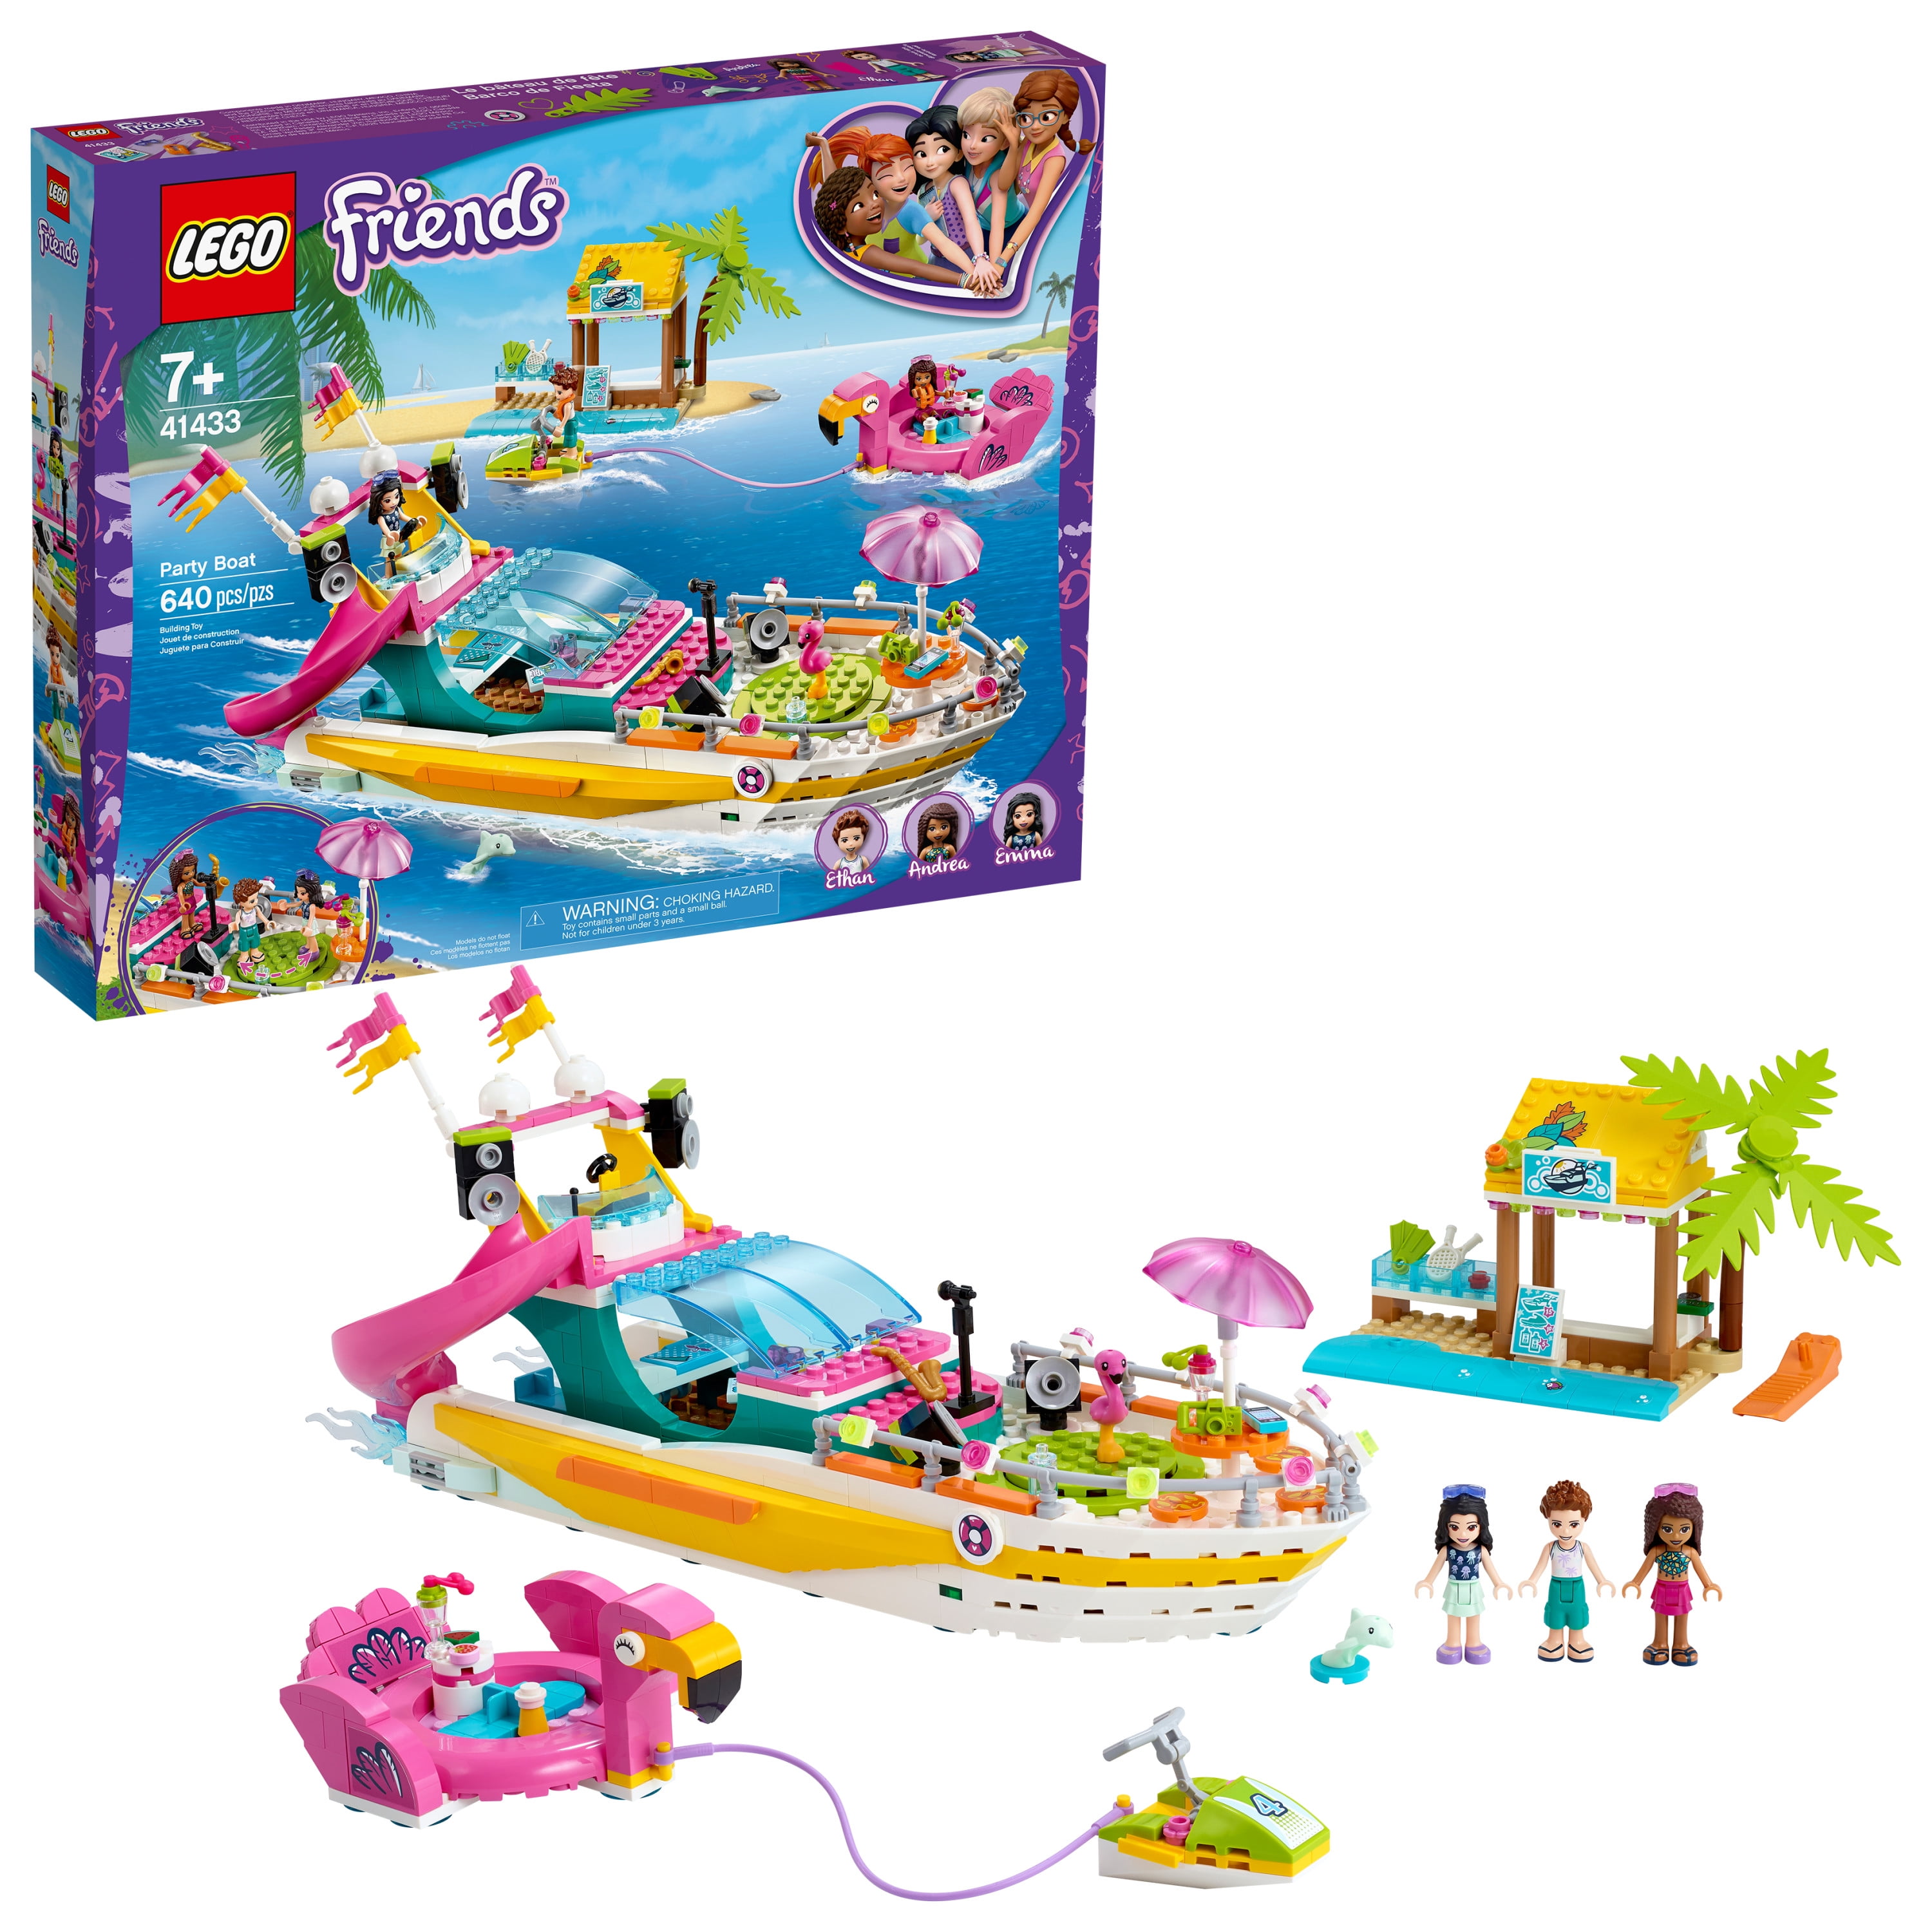 LEGO Friends 41433 Partyboot von Heartlake City 